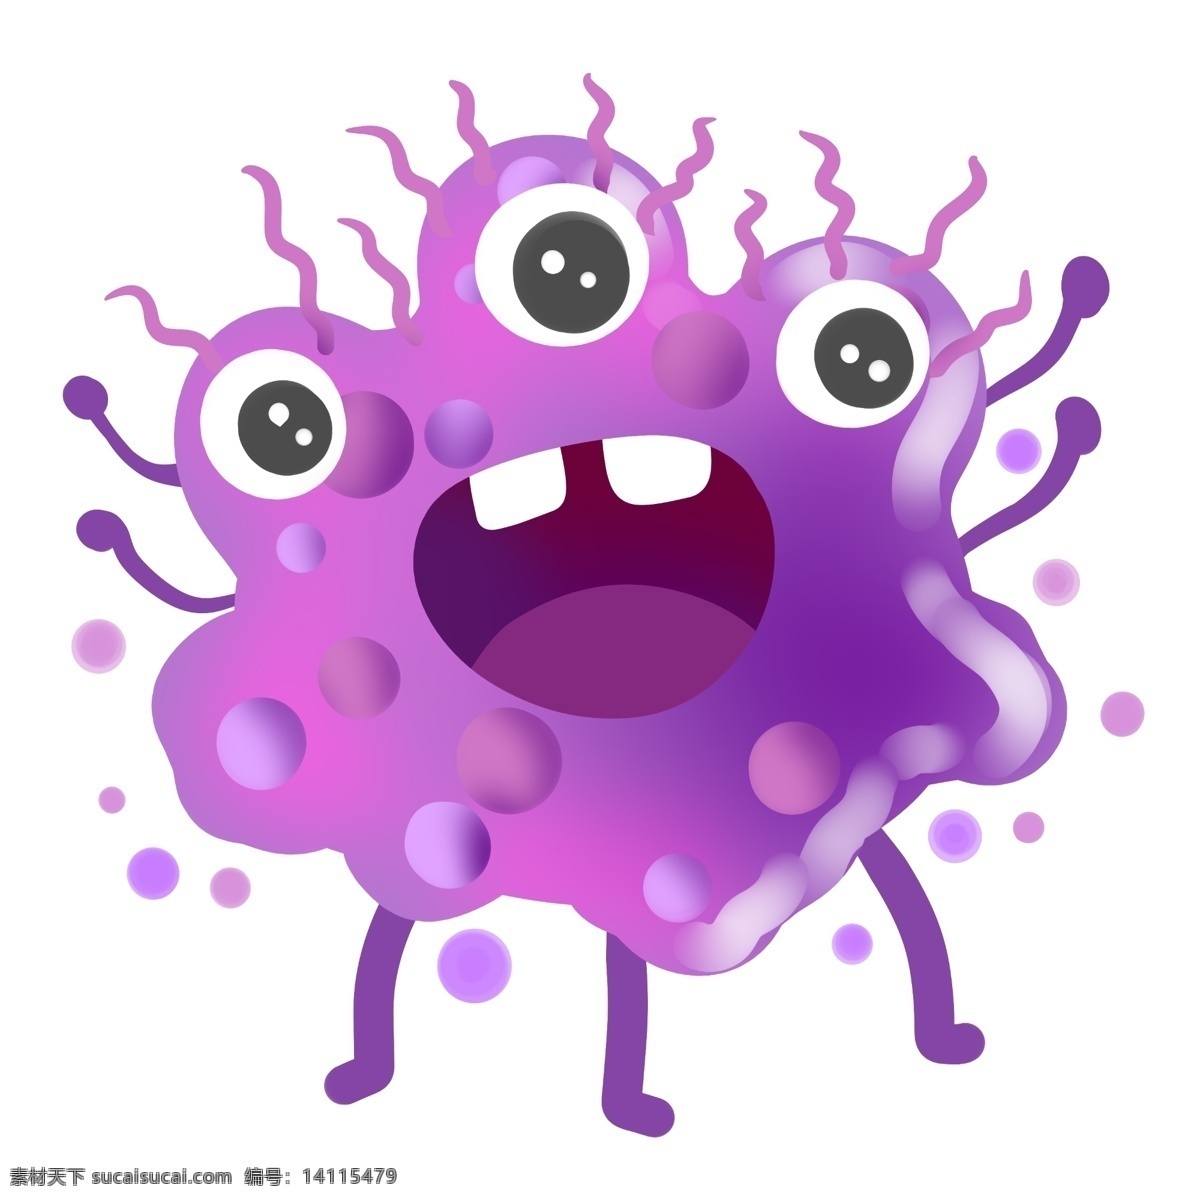 三个 眼睛 紫色 细菌 插画 病毒细菌 医疗 病毒 微生物 健康 医学 科学 血清 葡萄球菌 病菌